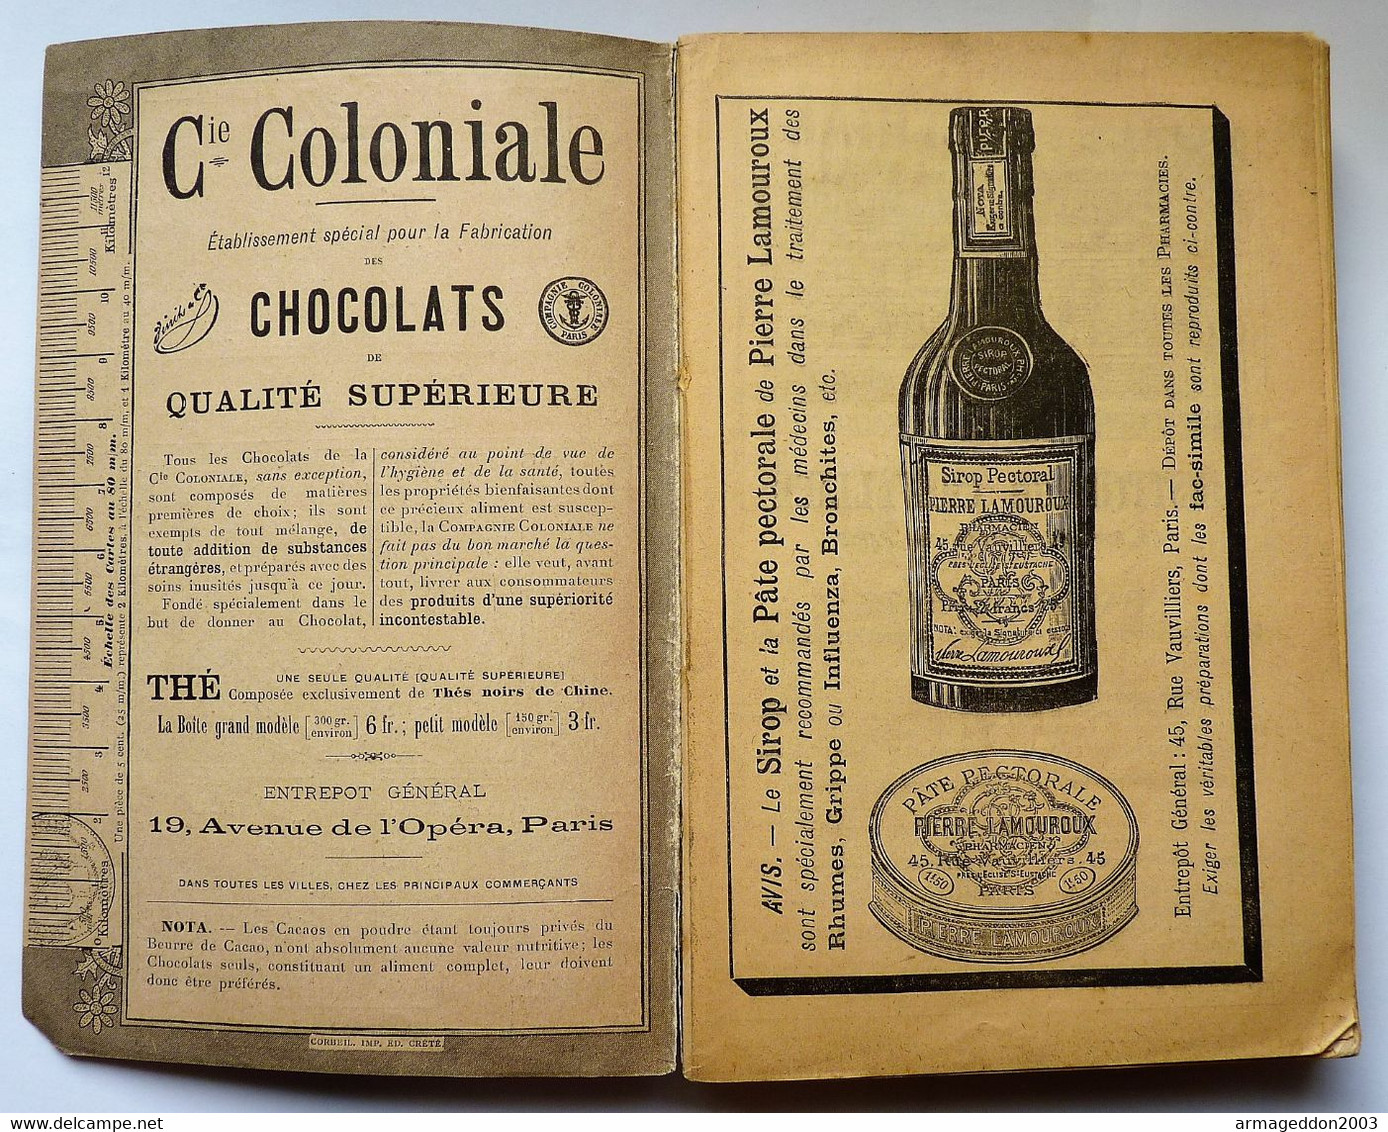 ALMANACH HACHETTE 1897 - PETITE ENCYCLOPEDIE POPULAIRE DE LA VIE PRATIQUE Be - Encyclopedieën